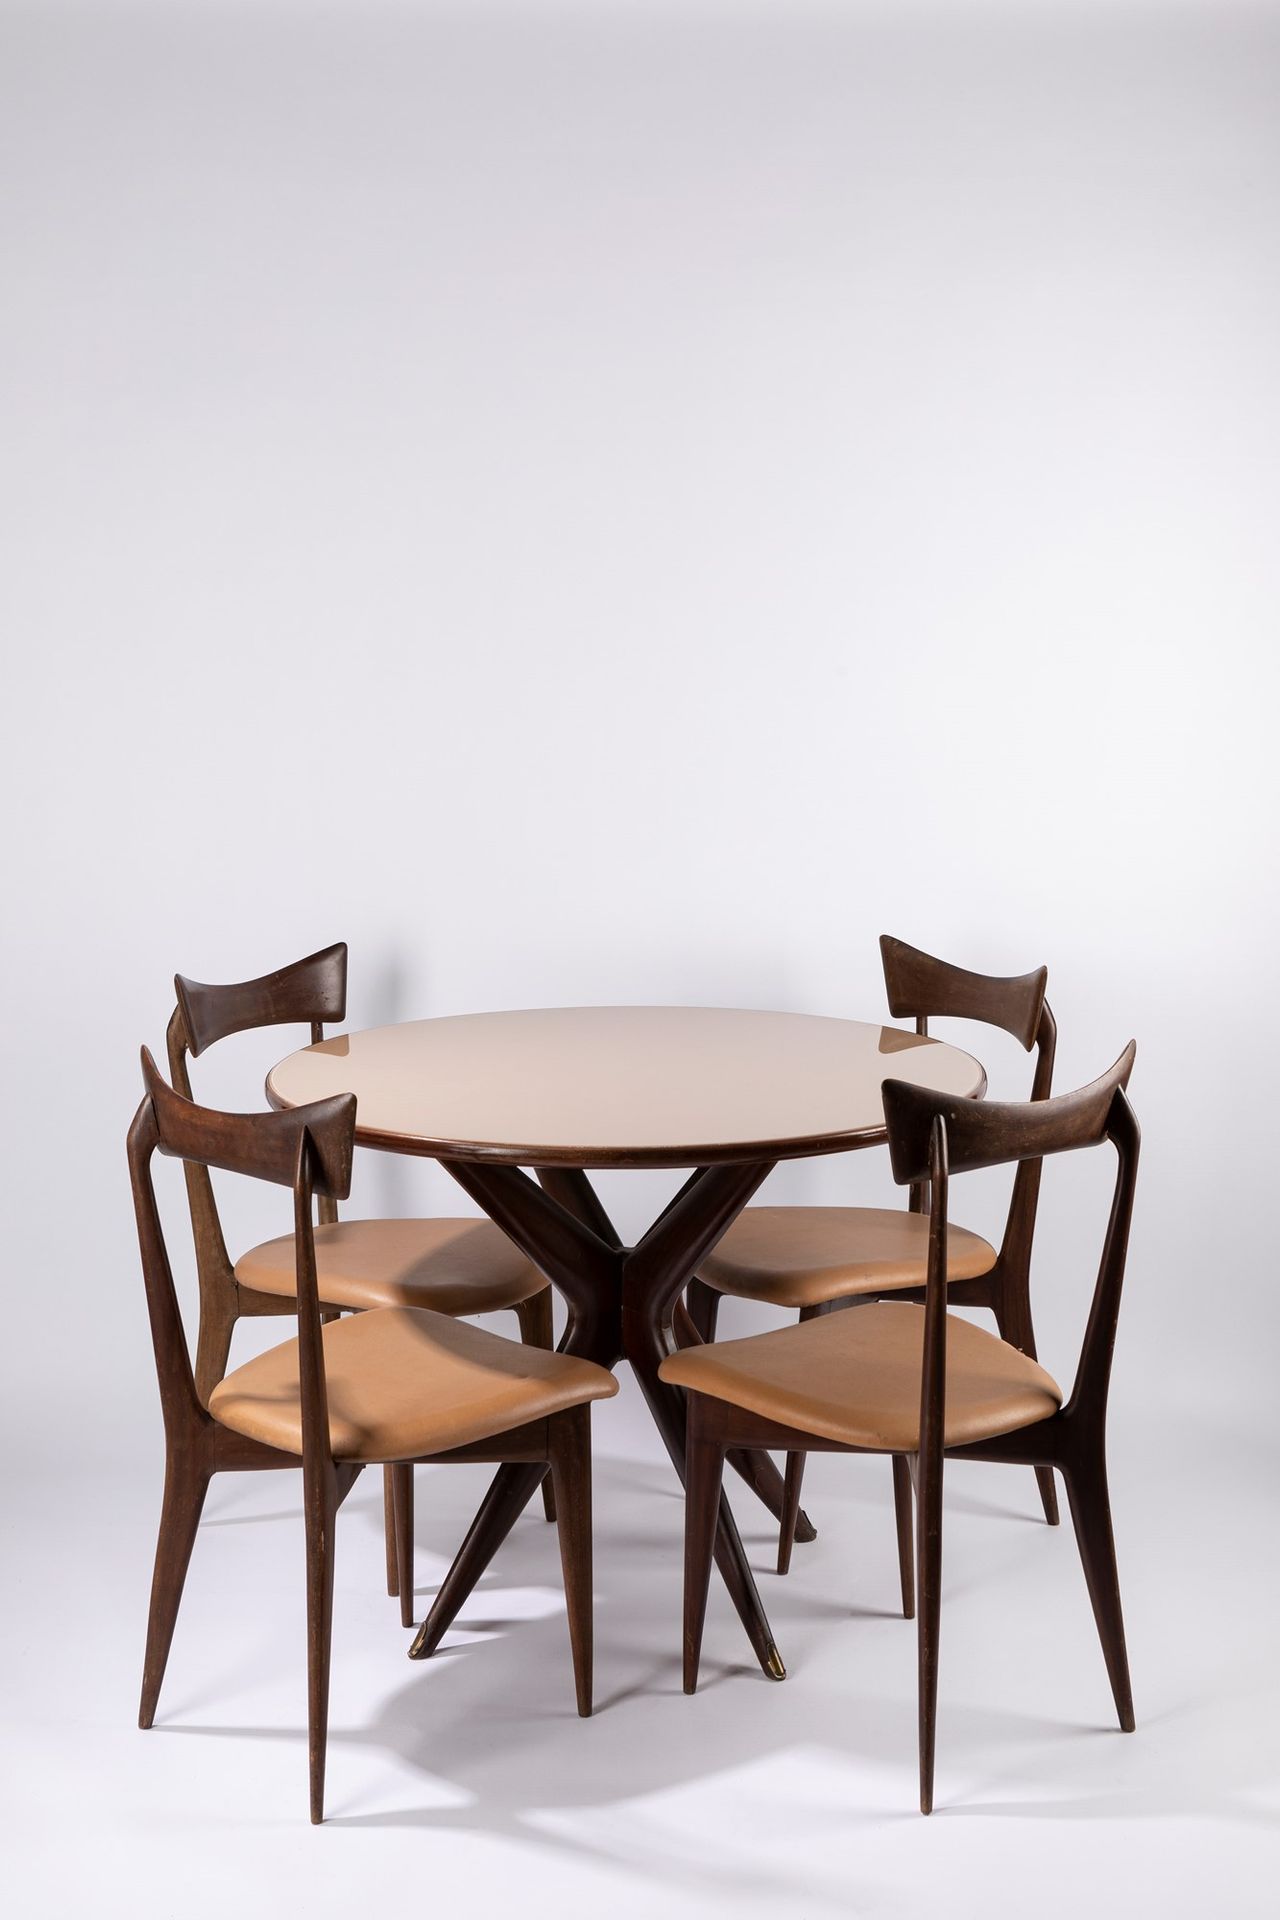 Ico & Luisa Parisi Table et quatre chaises, 1950 ca.

Table h 78 x diam 100 cm -&hellip;